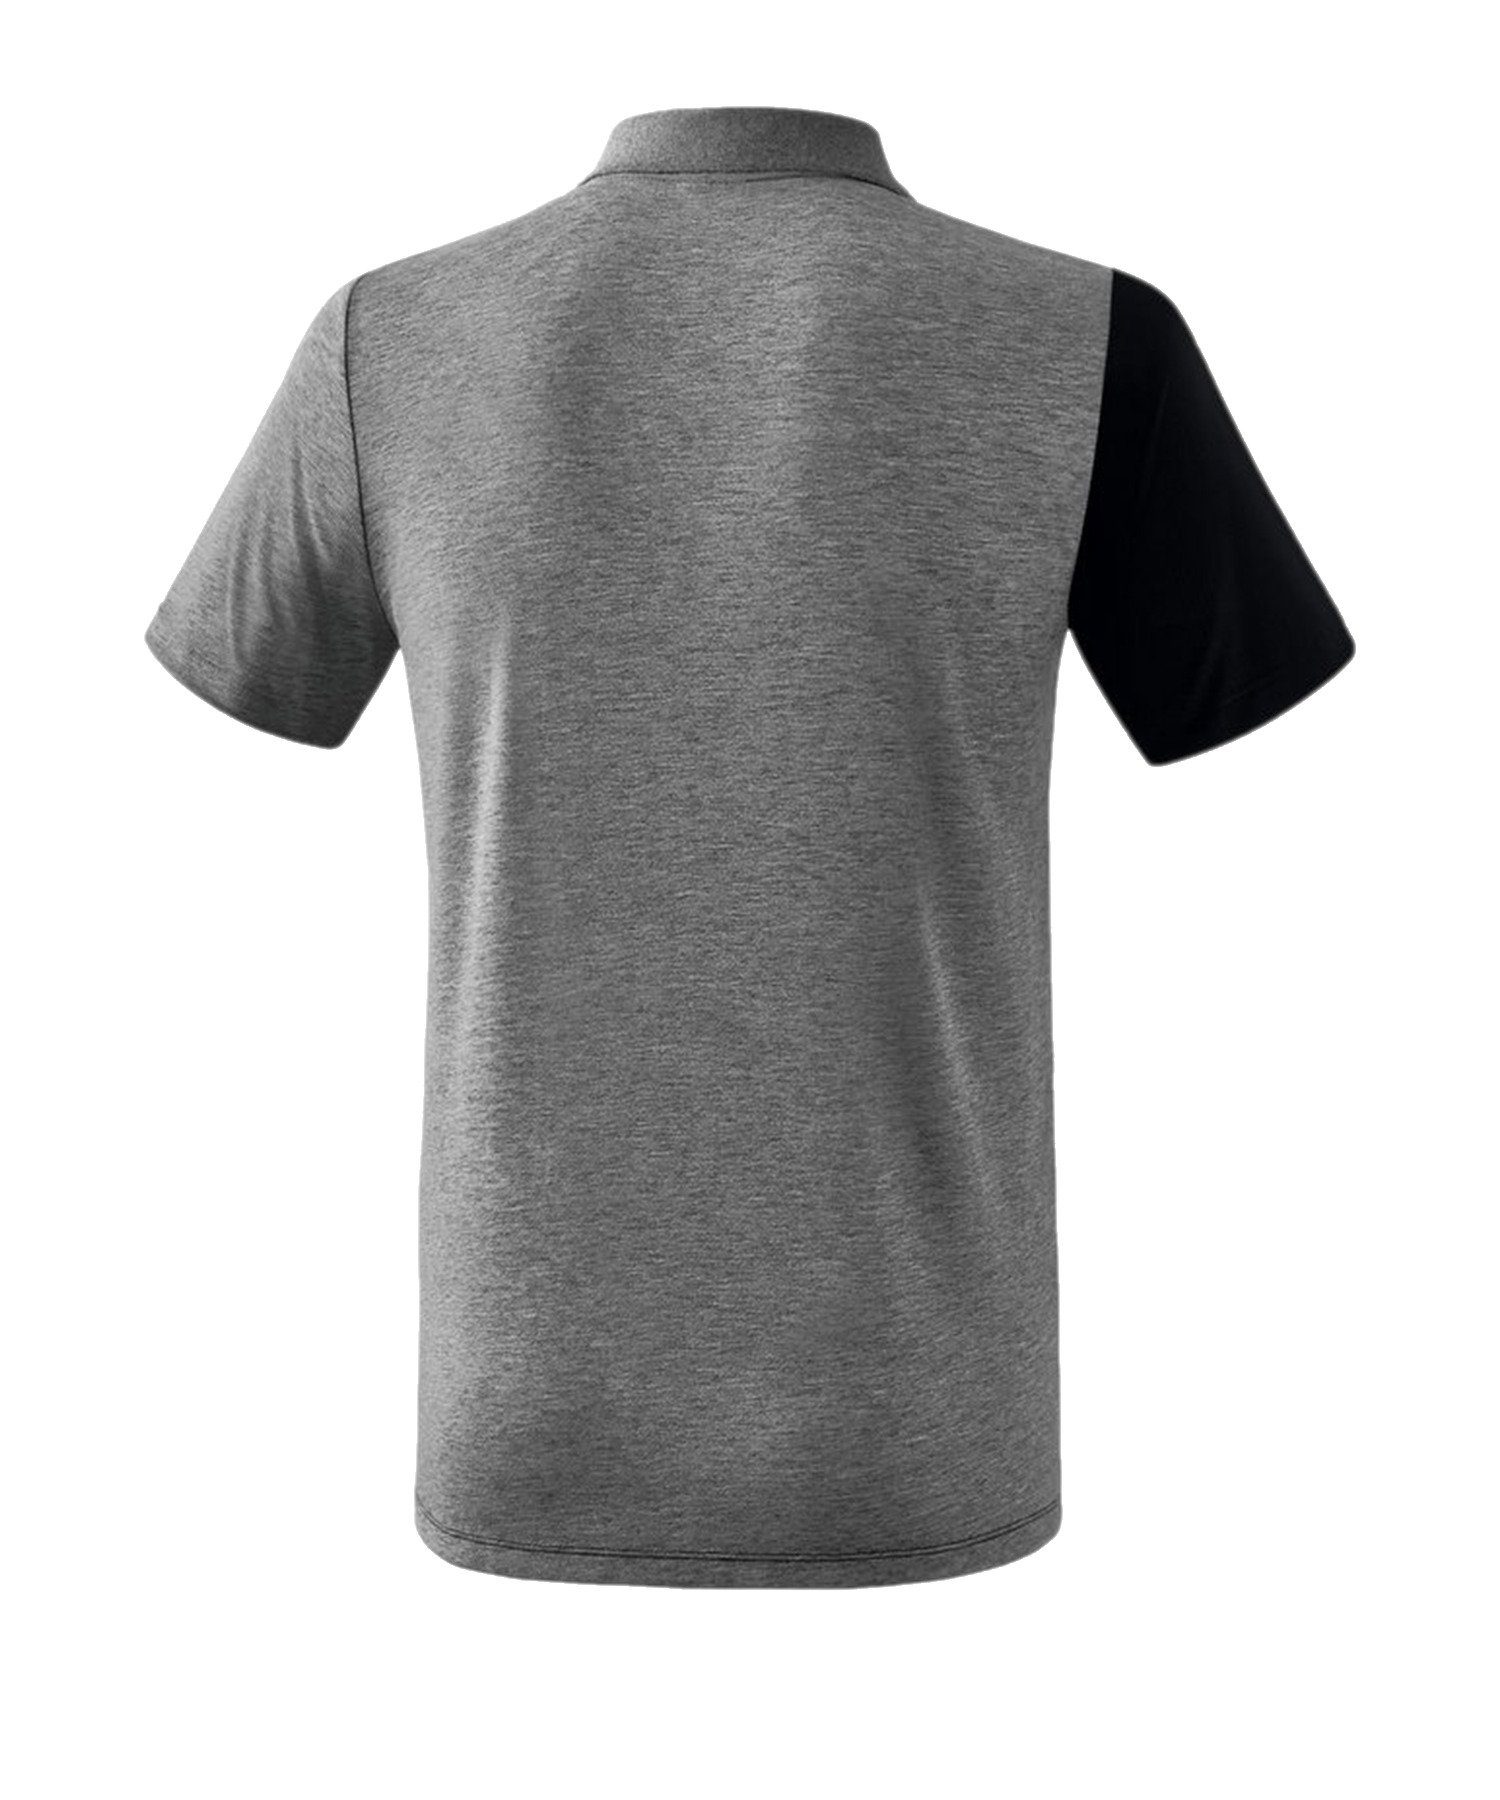 Erima 5-C T-Shirt default SchwarzGrauWeiss Poloshirt